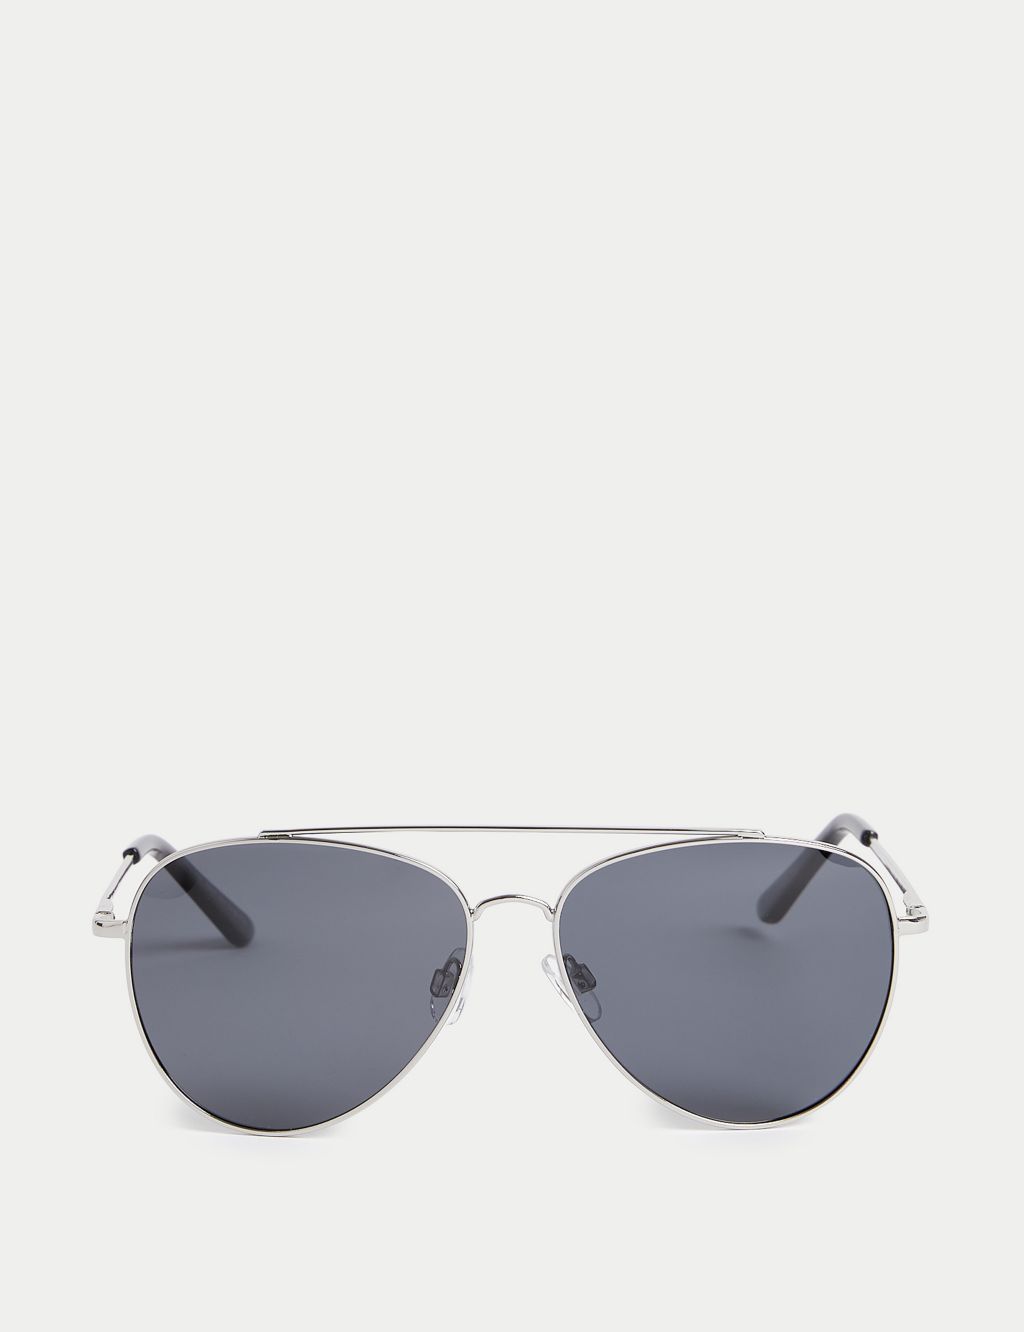 Men's Sunglasses | M&S